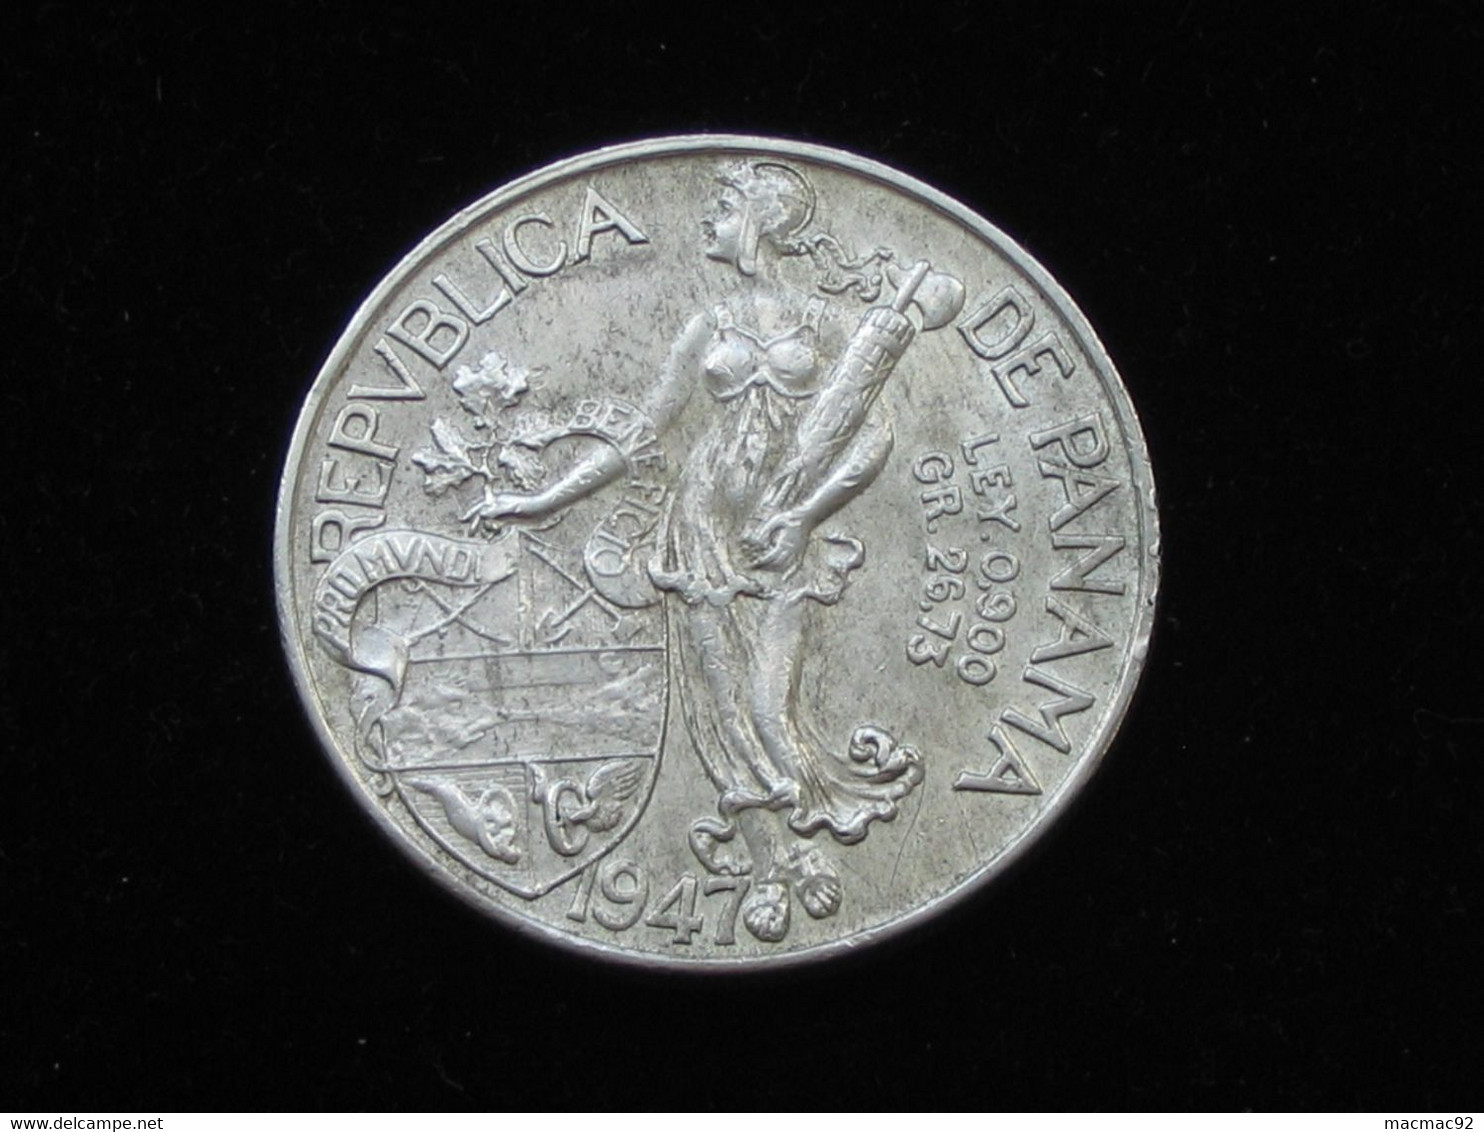 PANAMA - BALBOA 1947 -- Très Belle Monnaie En Argent  **** EN ACHAT IMMEDIAT **** - Panama